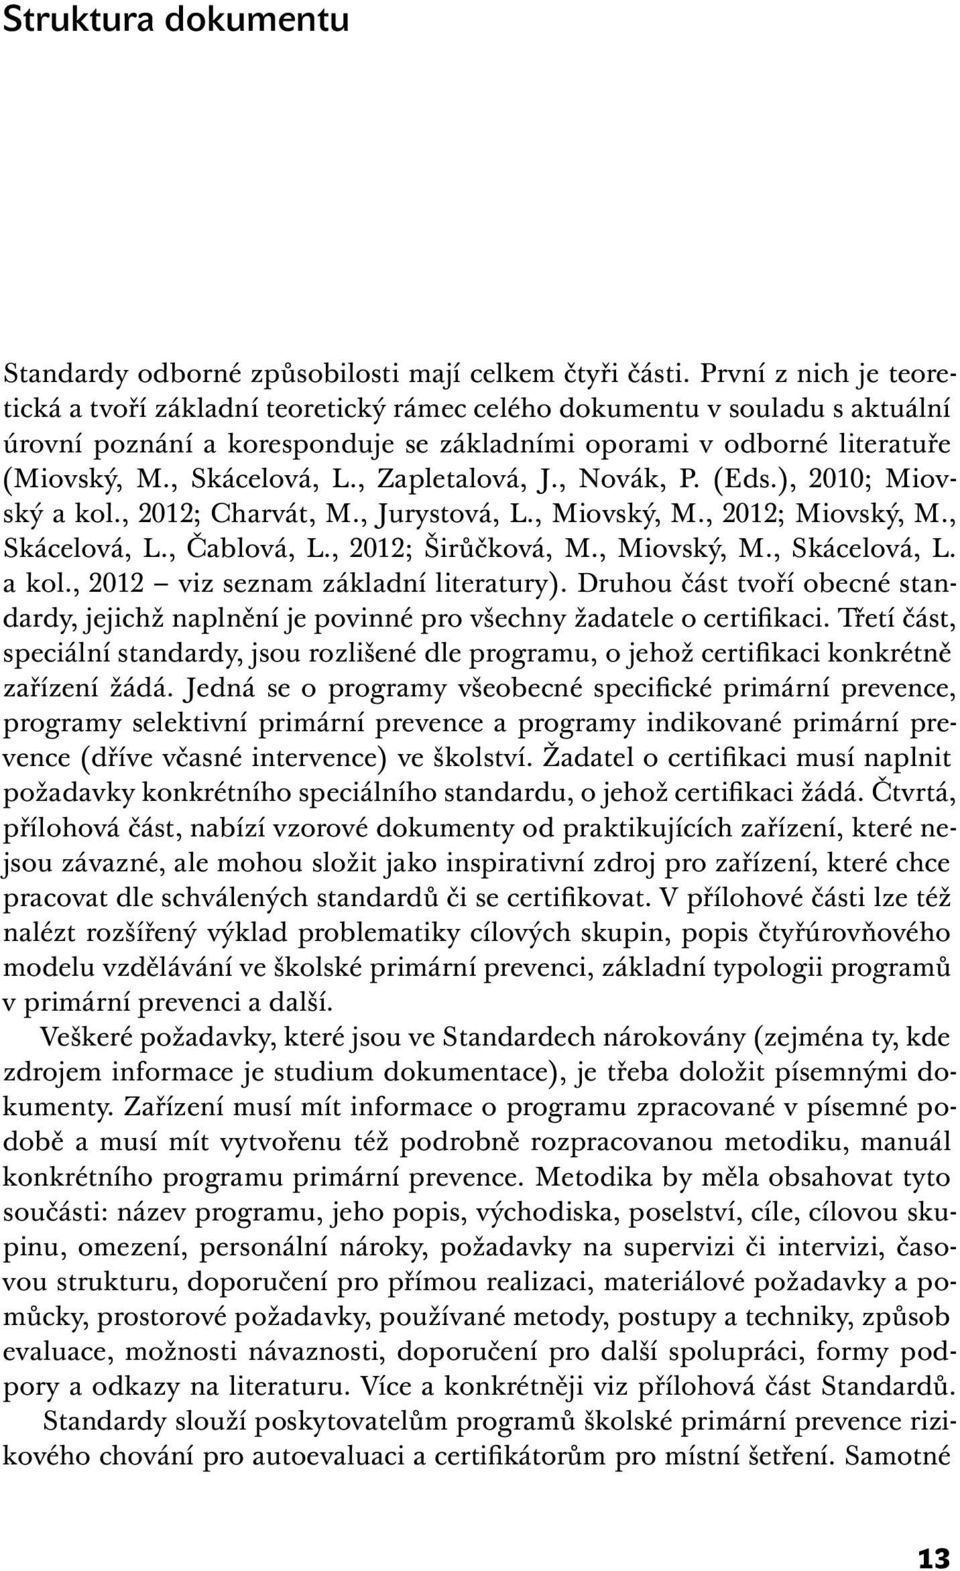 , Zapletalová, J., Novák, P. (Eds.), 2010; Miovský a kol., 2012; Charvát, M., Jurystová, L., Miovský, M., 2012; Miovský, M., Skácelová, L., Čablová, L., 2012; Širůčková, M., Miovský, M., Skácelová, L. a kol., 2012 viz seznam základní literatury).